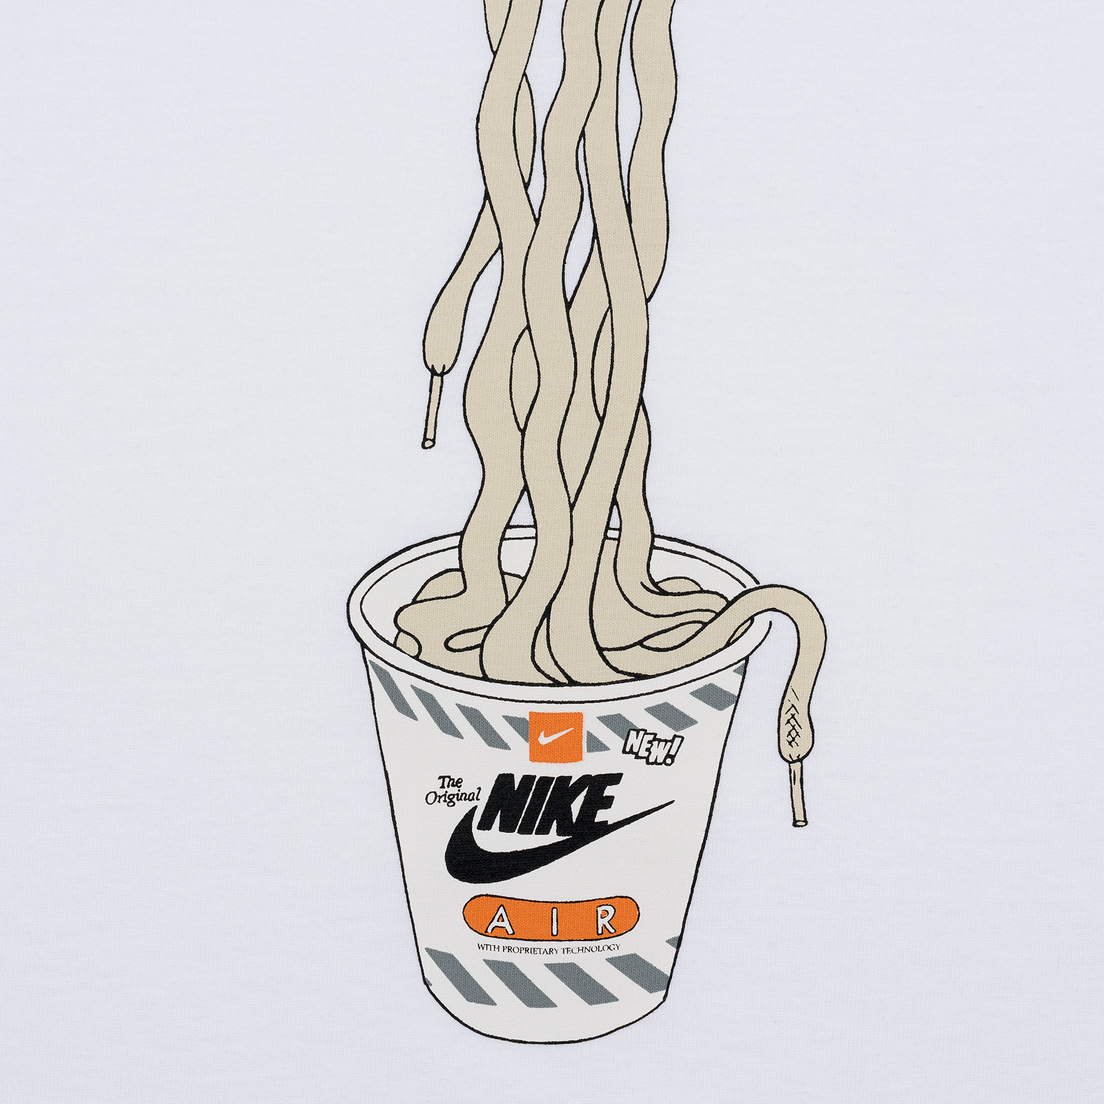 Nike Мужская футболка Culture 2